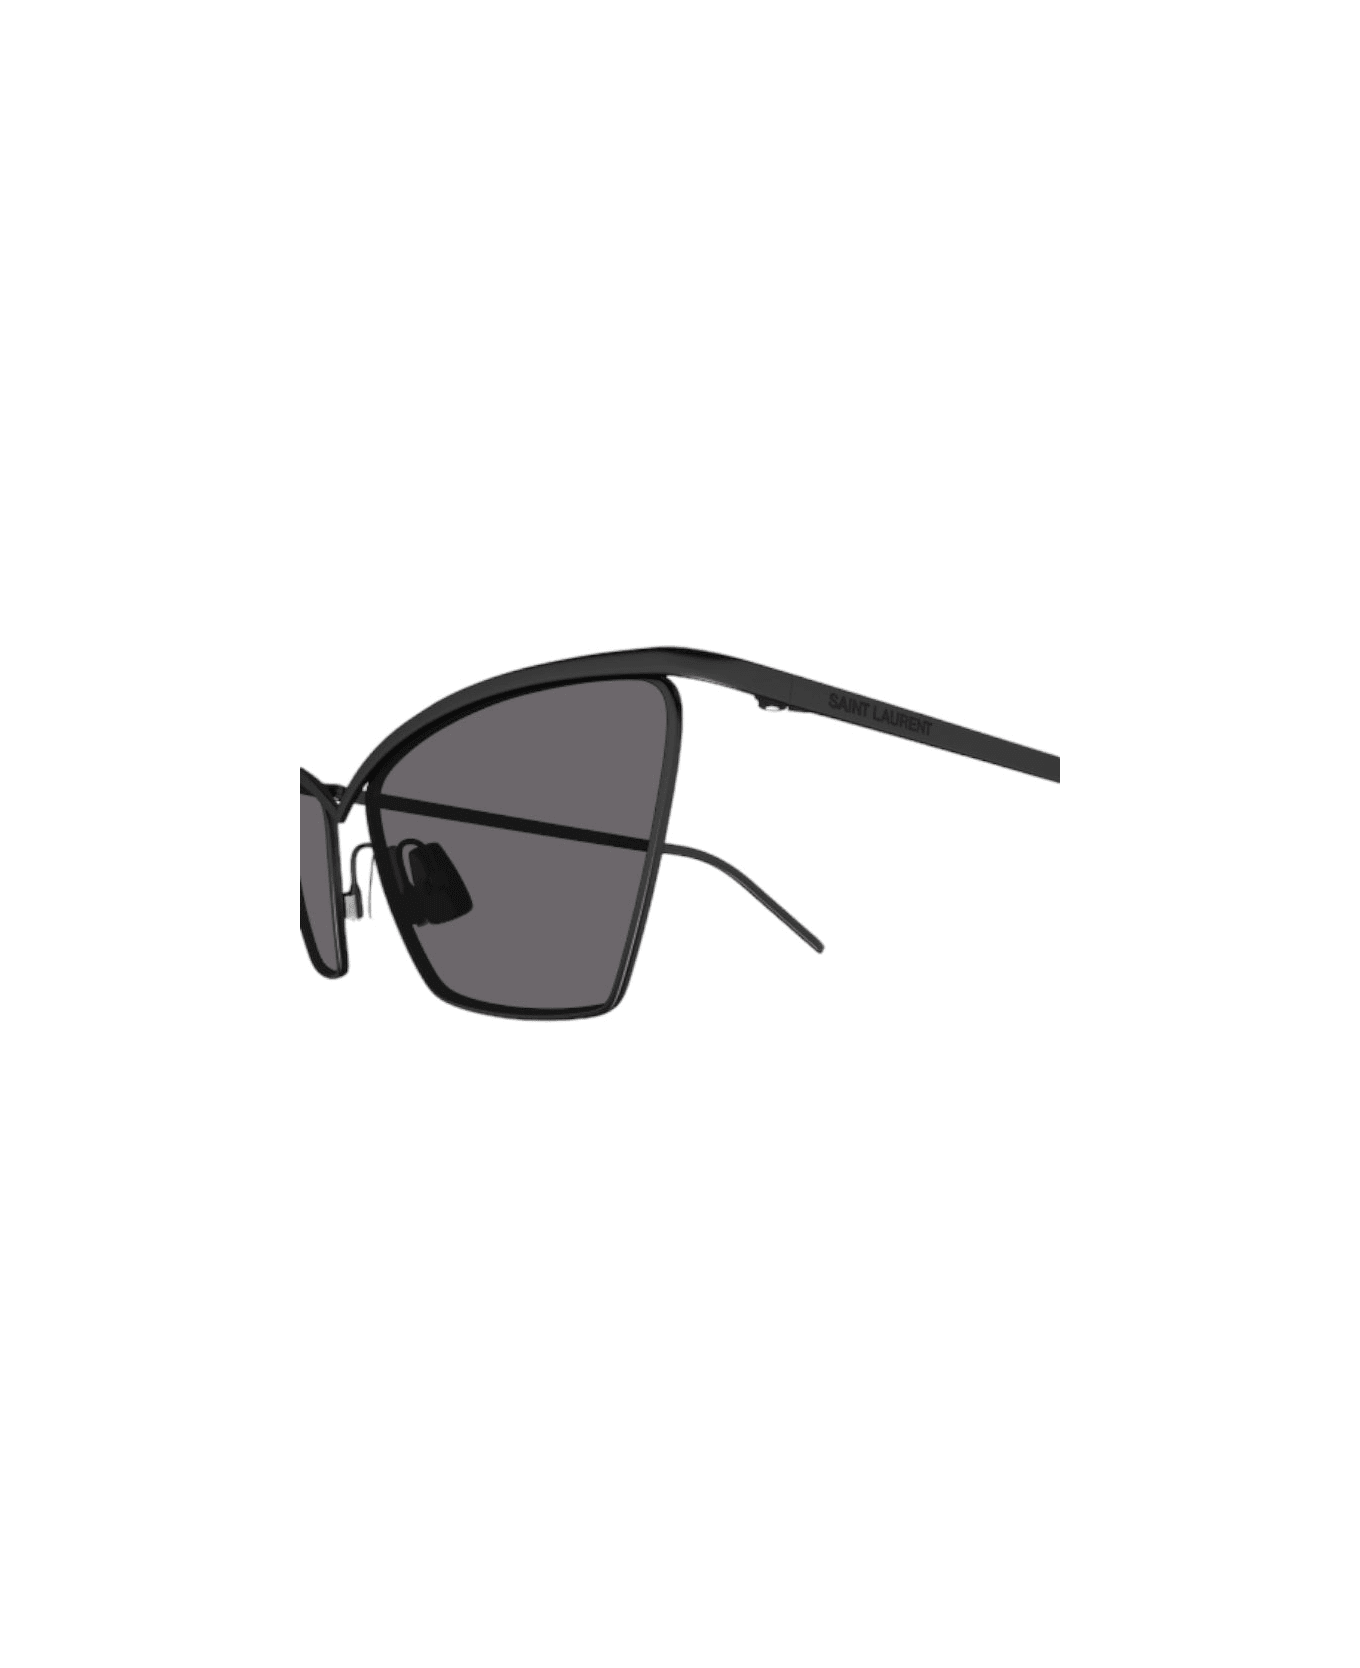 Saint Laurent Eyewear Sl 637 - Metal Sunglasses